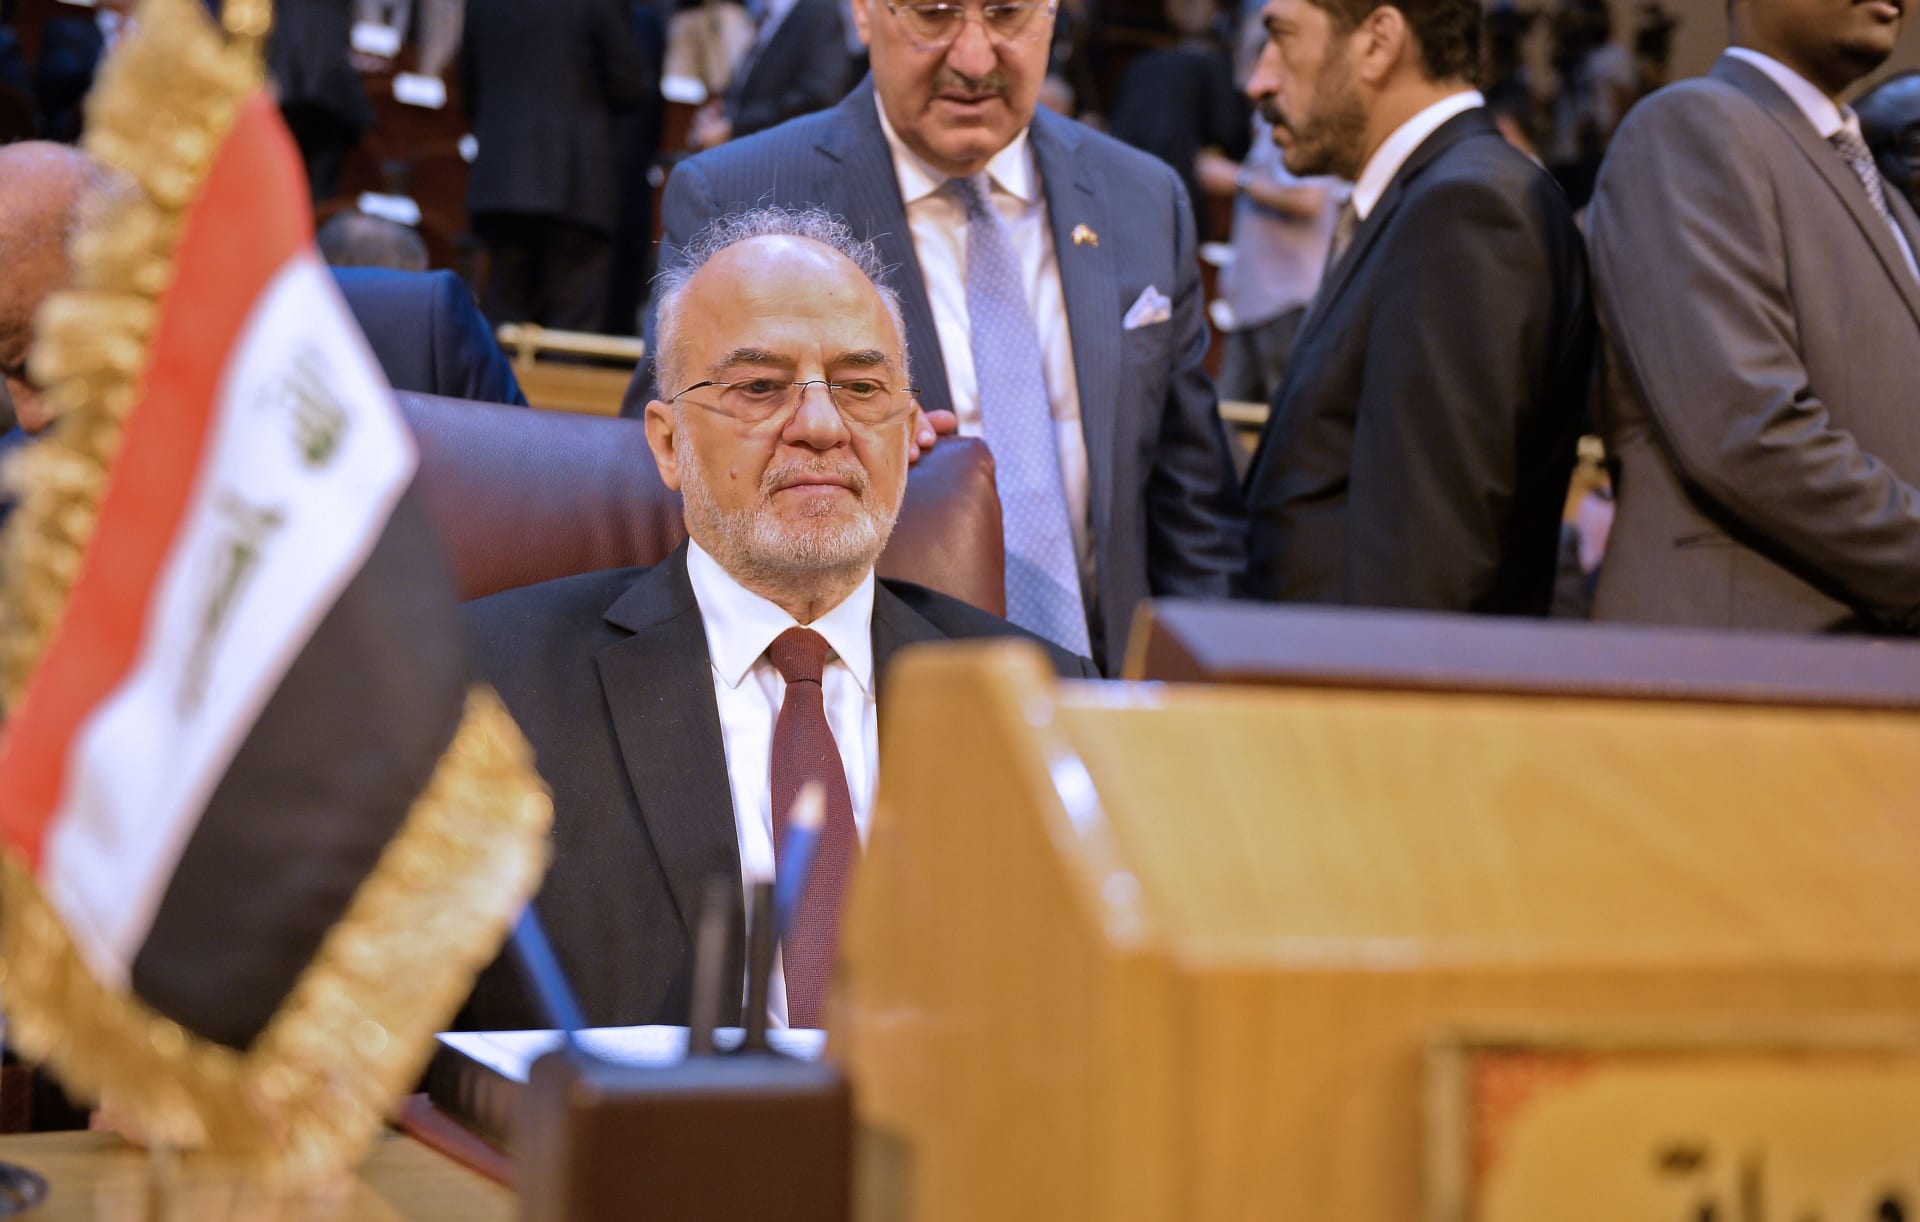 تداول "جدال" وزير خارجية العراق ووزير سعودي حول اليمن بجلسة الجامعة العربية